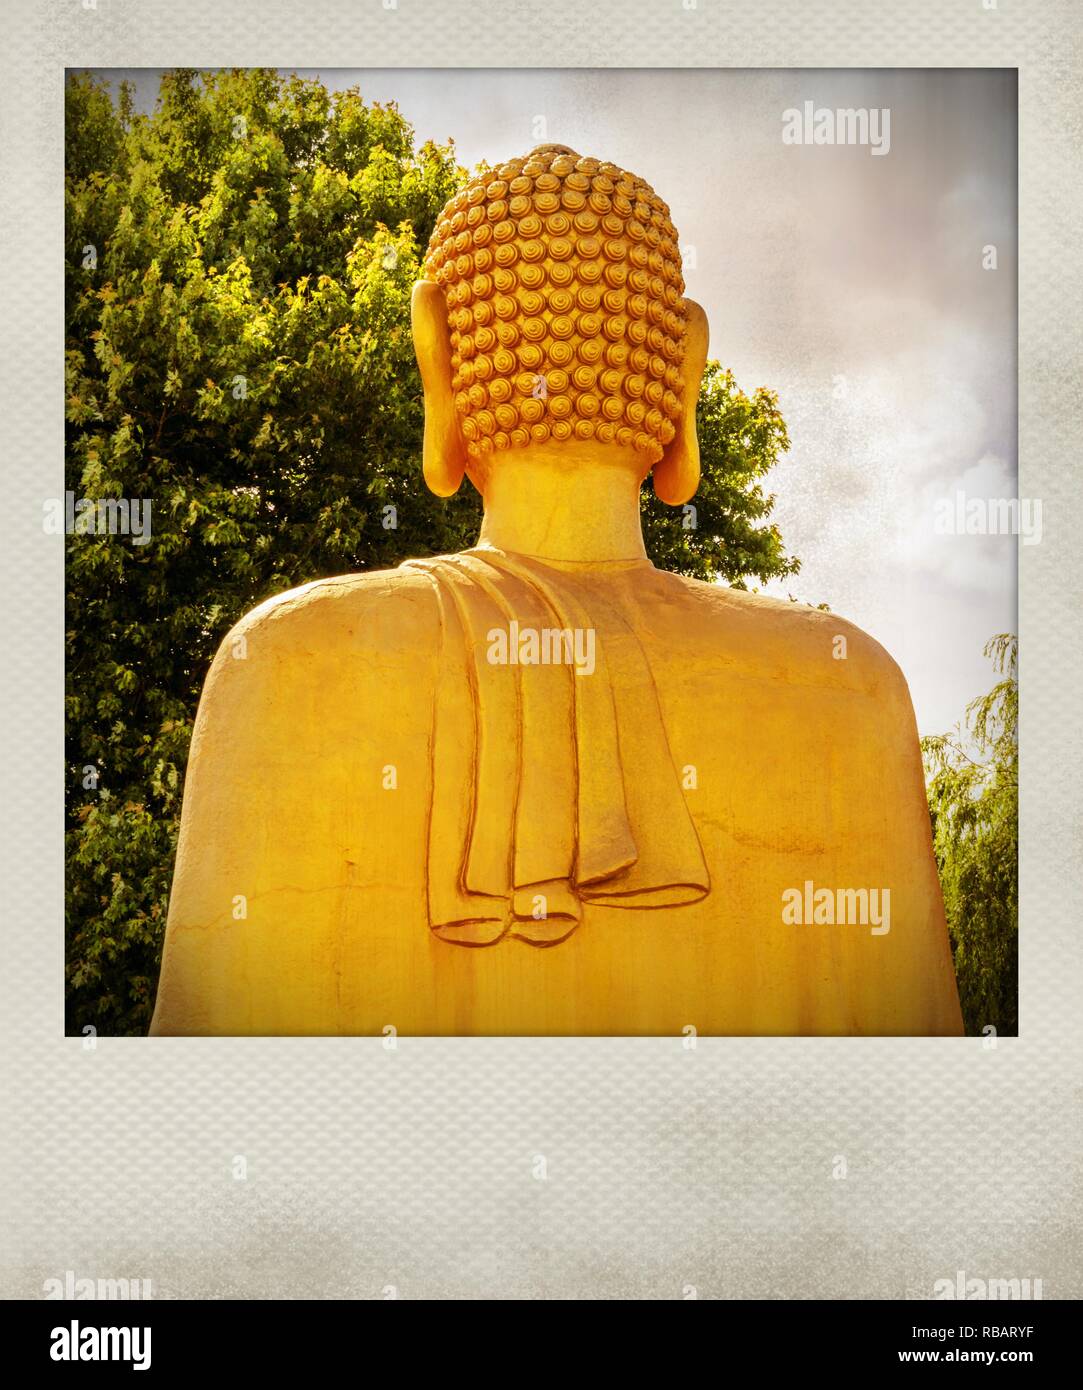 Effet Polaroid de Bouddha d'or de la pagode vietnamienne, dos, noyant d'Allier, Allier, Auvergne-Rhone-Alpes, France, Europe Banque D'Images